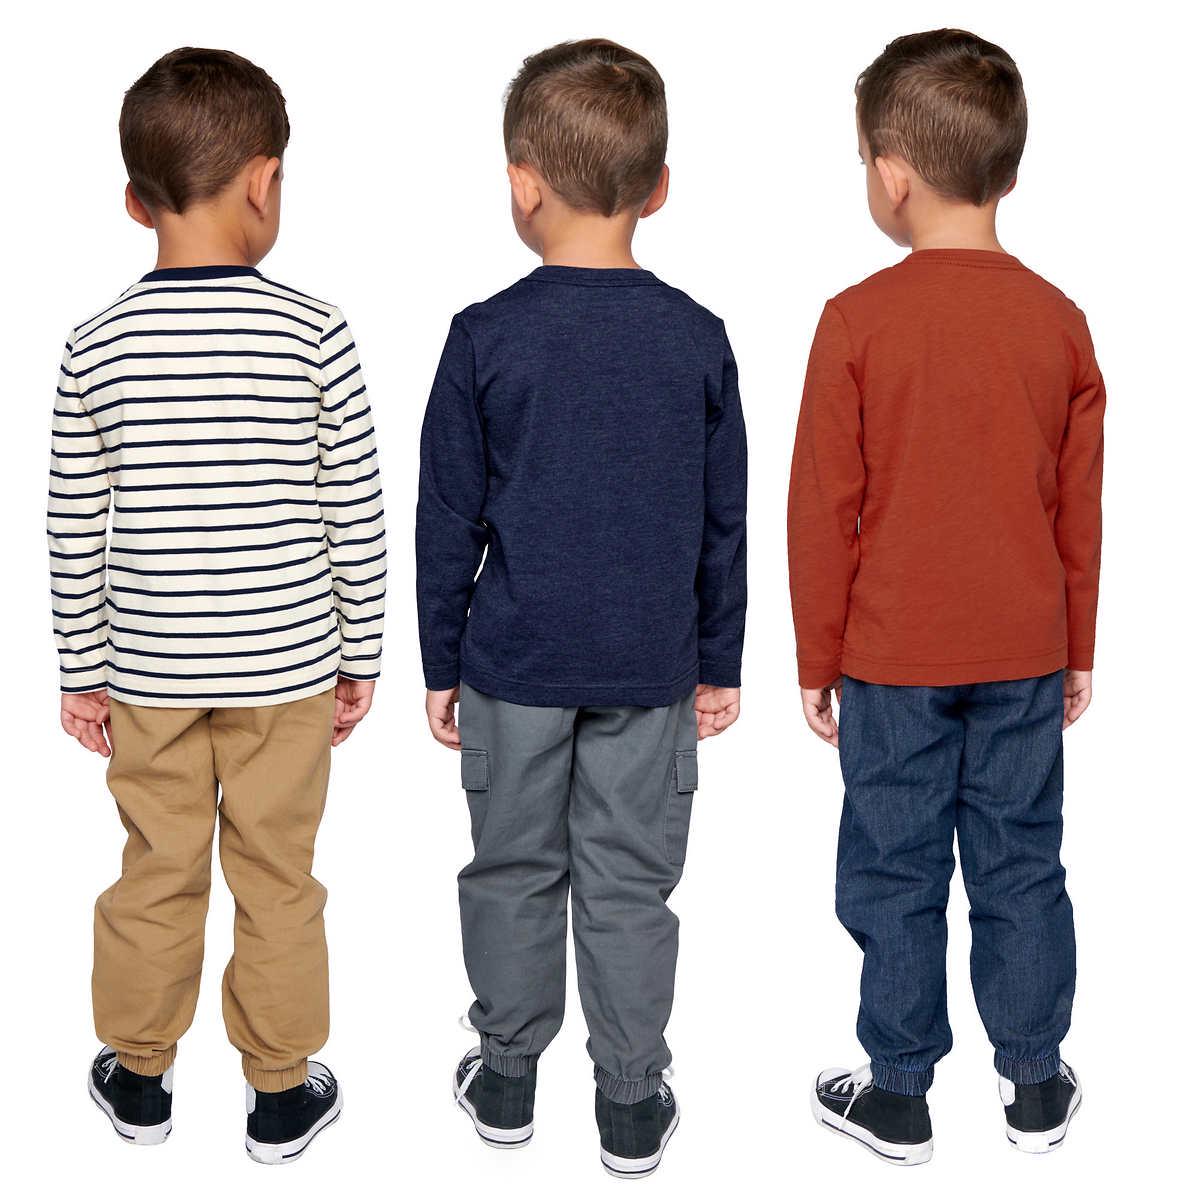 Pekkle Kids' 3-pack Long Sleeve Top